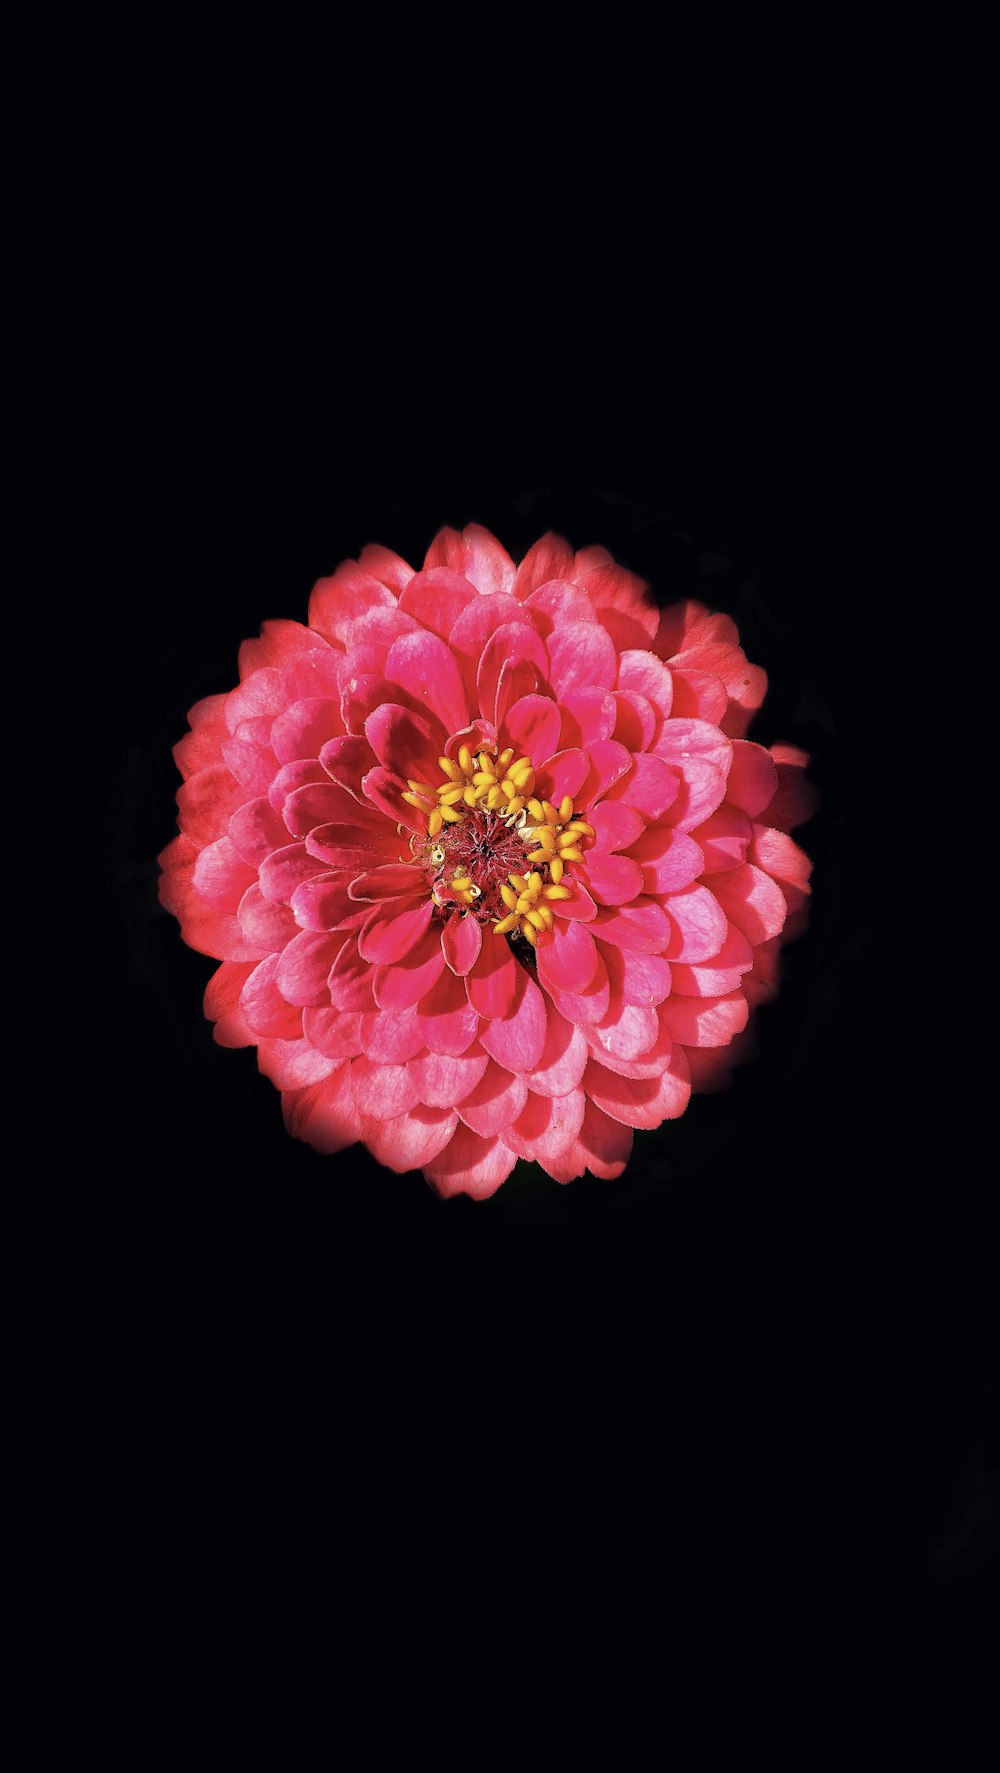 flor cor-de-rosa com fundo preto